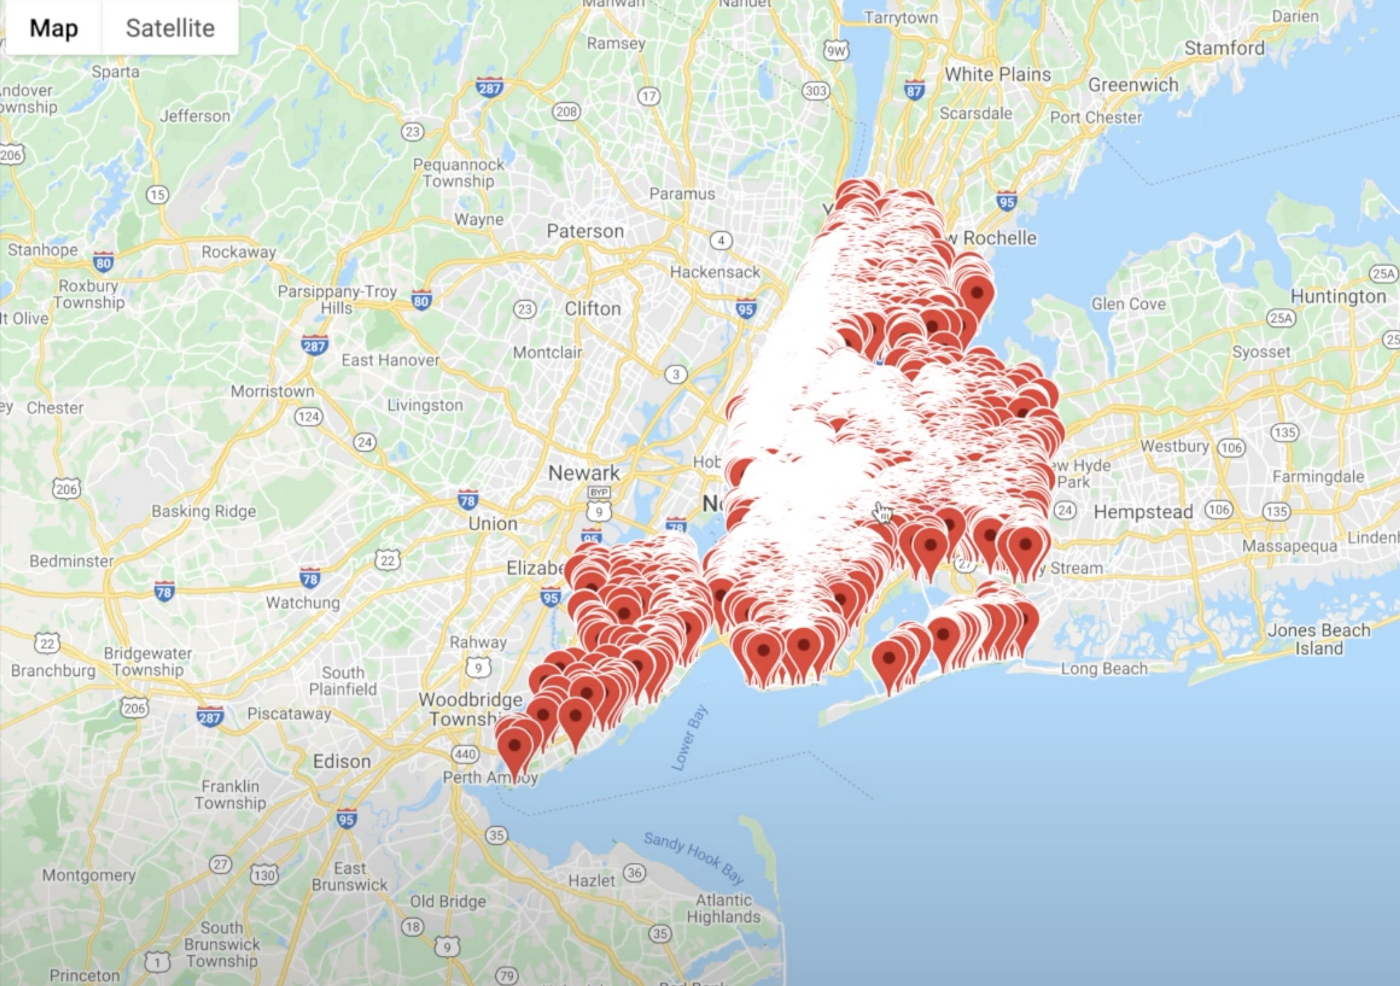 Расположение Airbnb в Нью-Йорке (изображение автора с помощью Google Maps)